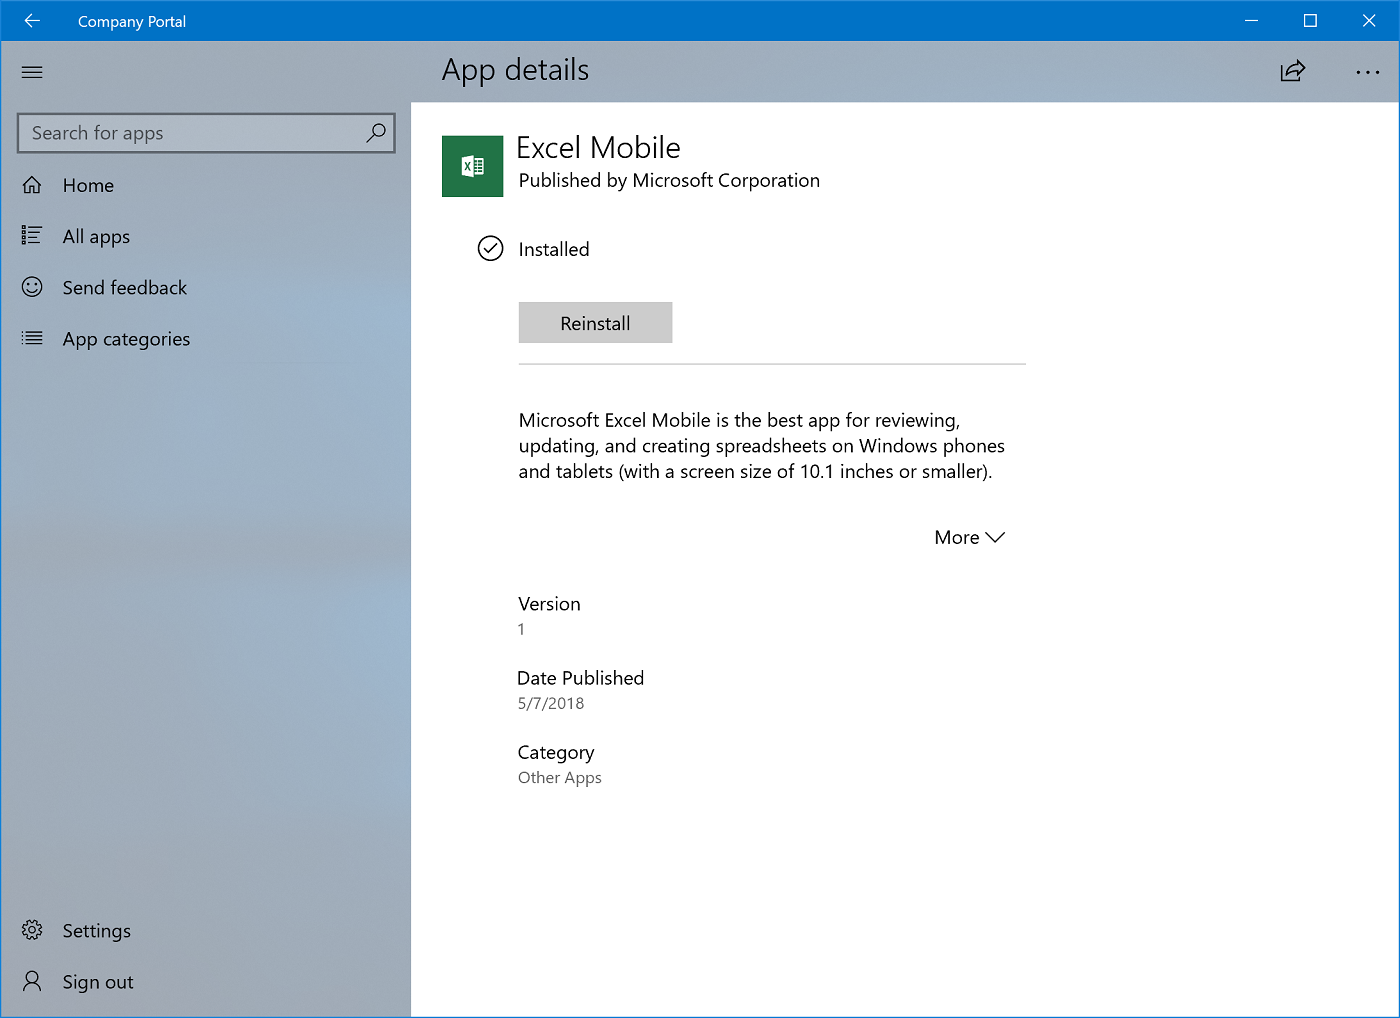 Página App details (Detalhes da aplicação) da aplicação Portal da Empresa para Windows 10, com o estado "Installed" (Instalado) apresentado após a instalação da aplicação. Botão Instalar alterado para Reinstalar.